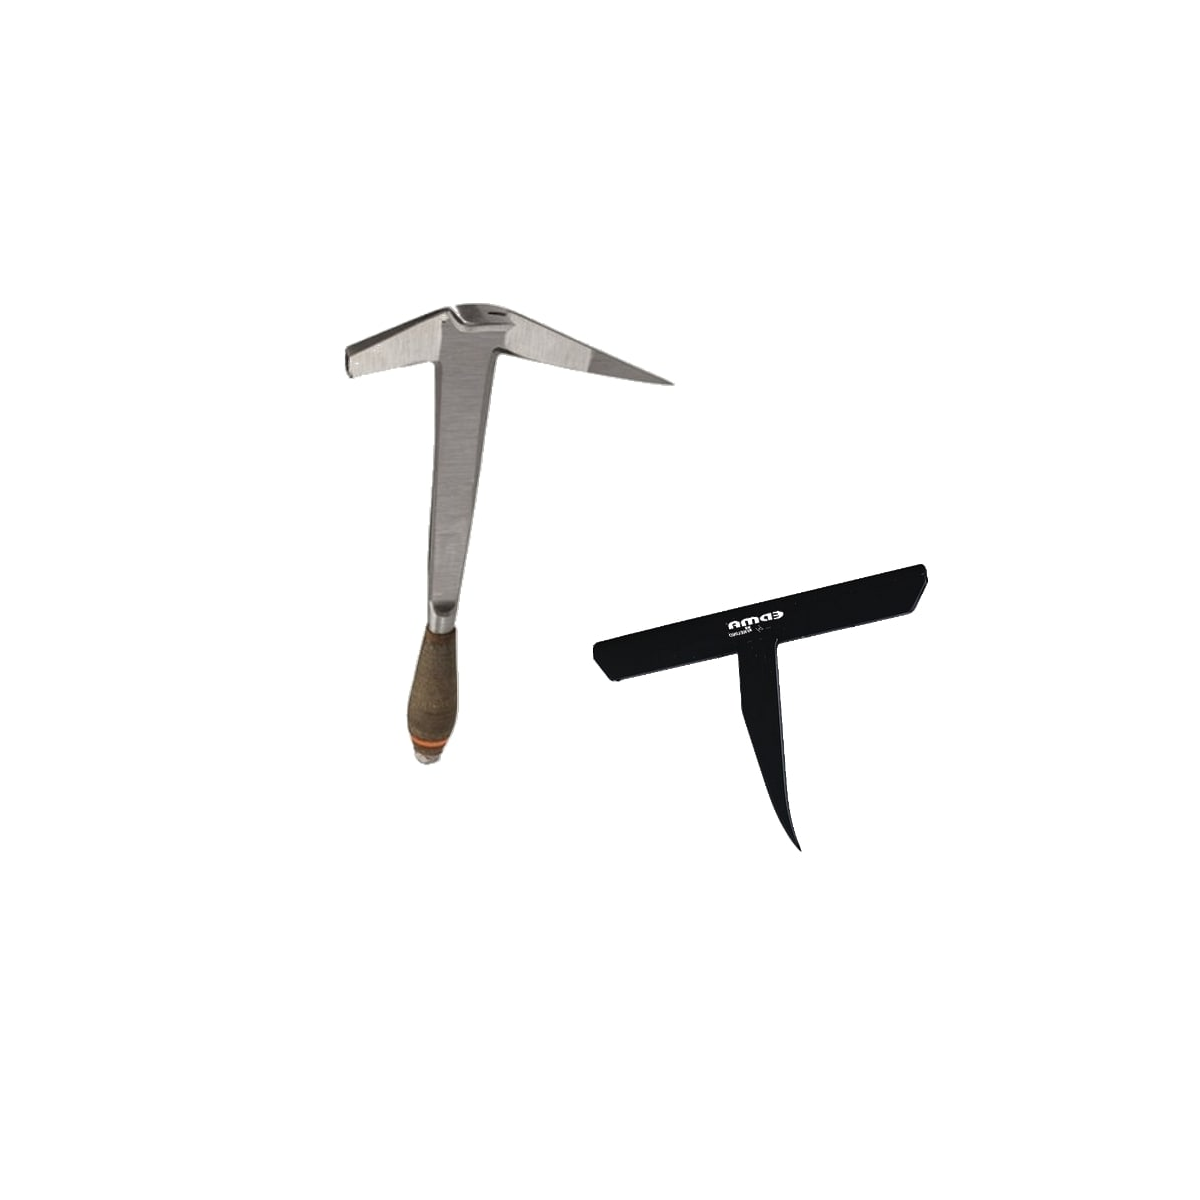 marteau de couvreur et enclume de couvreur